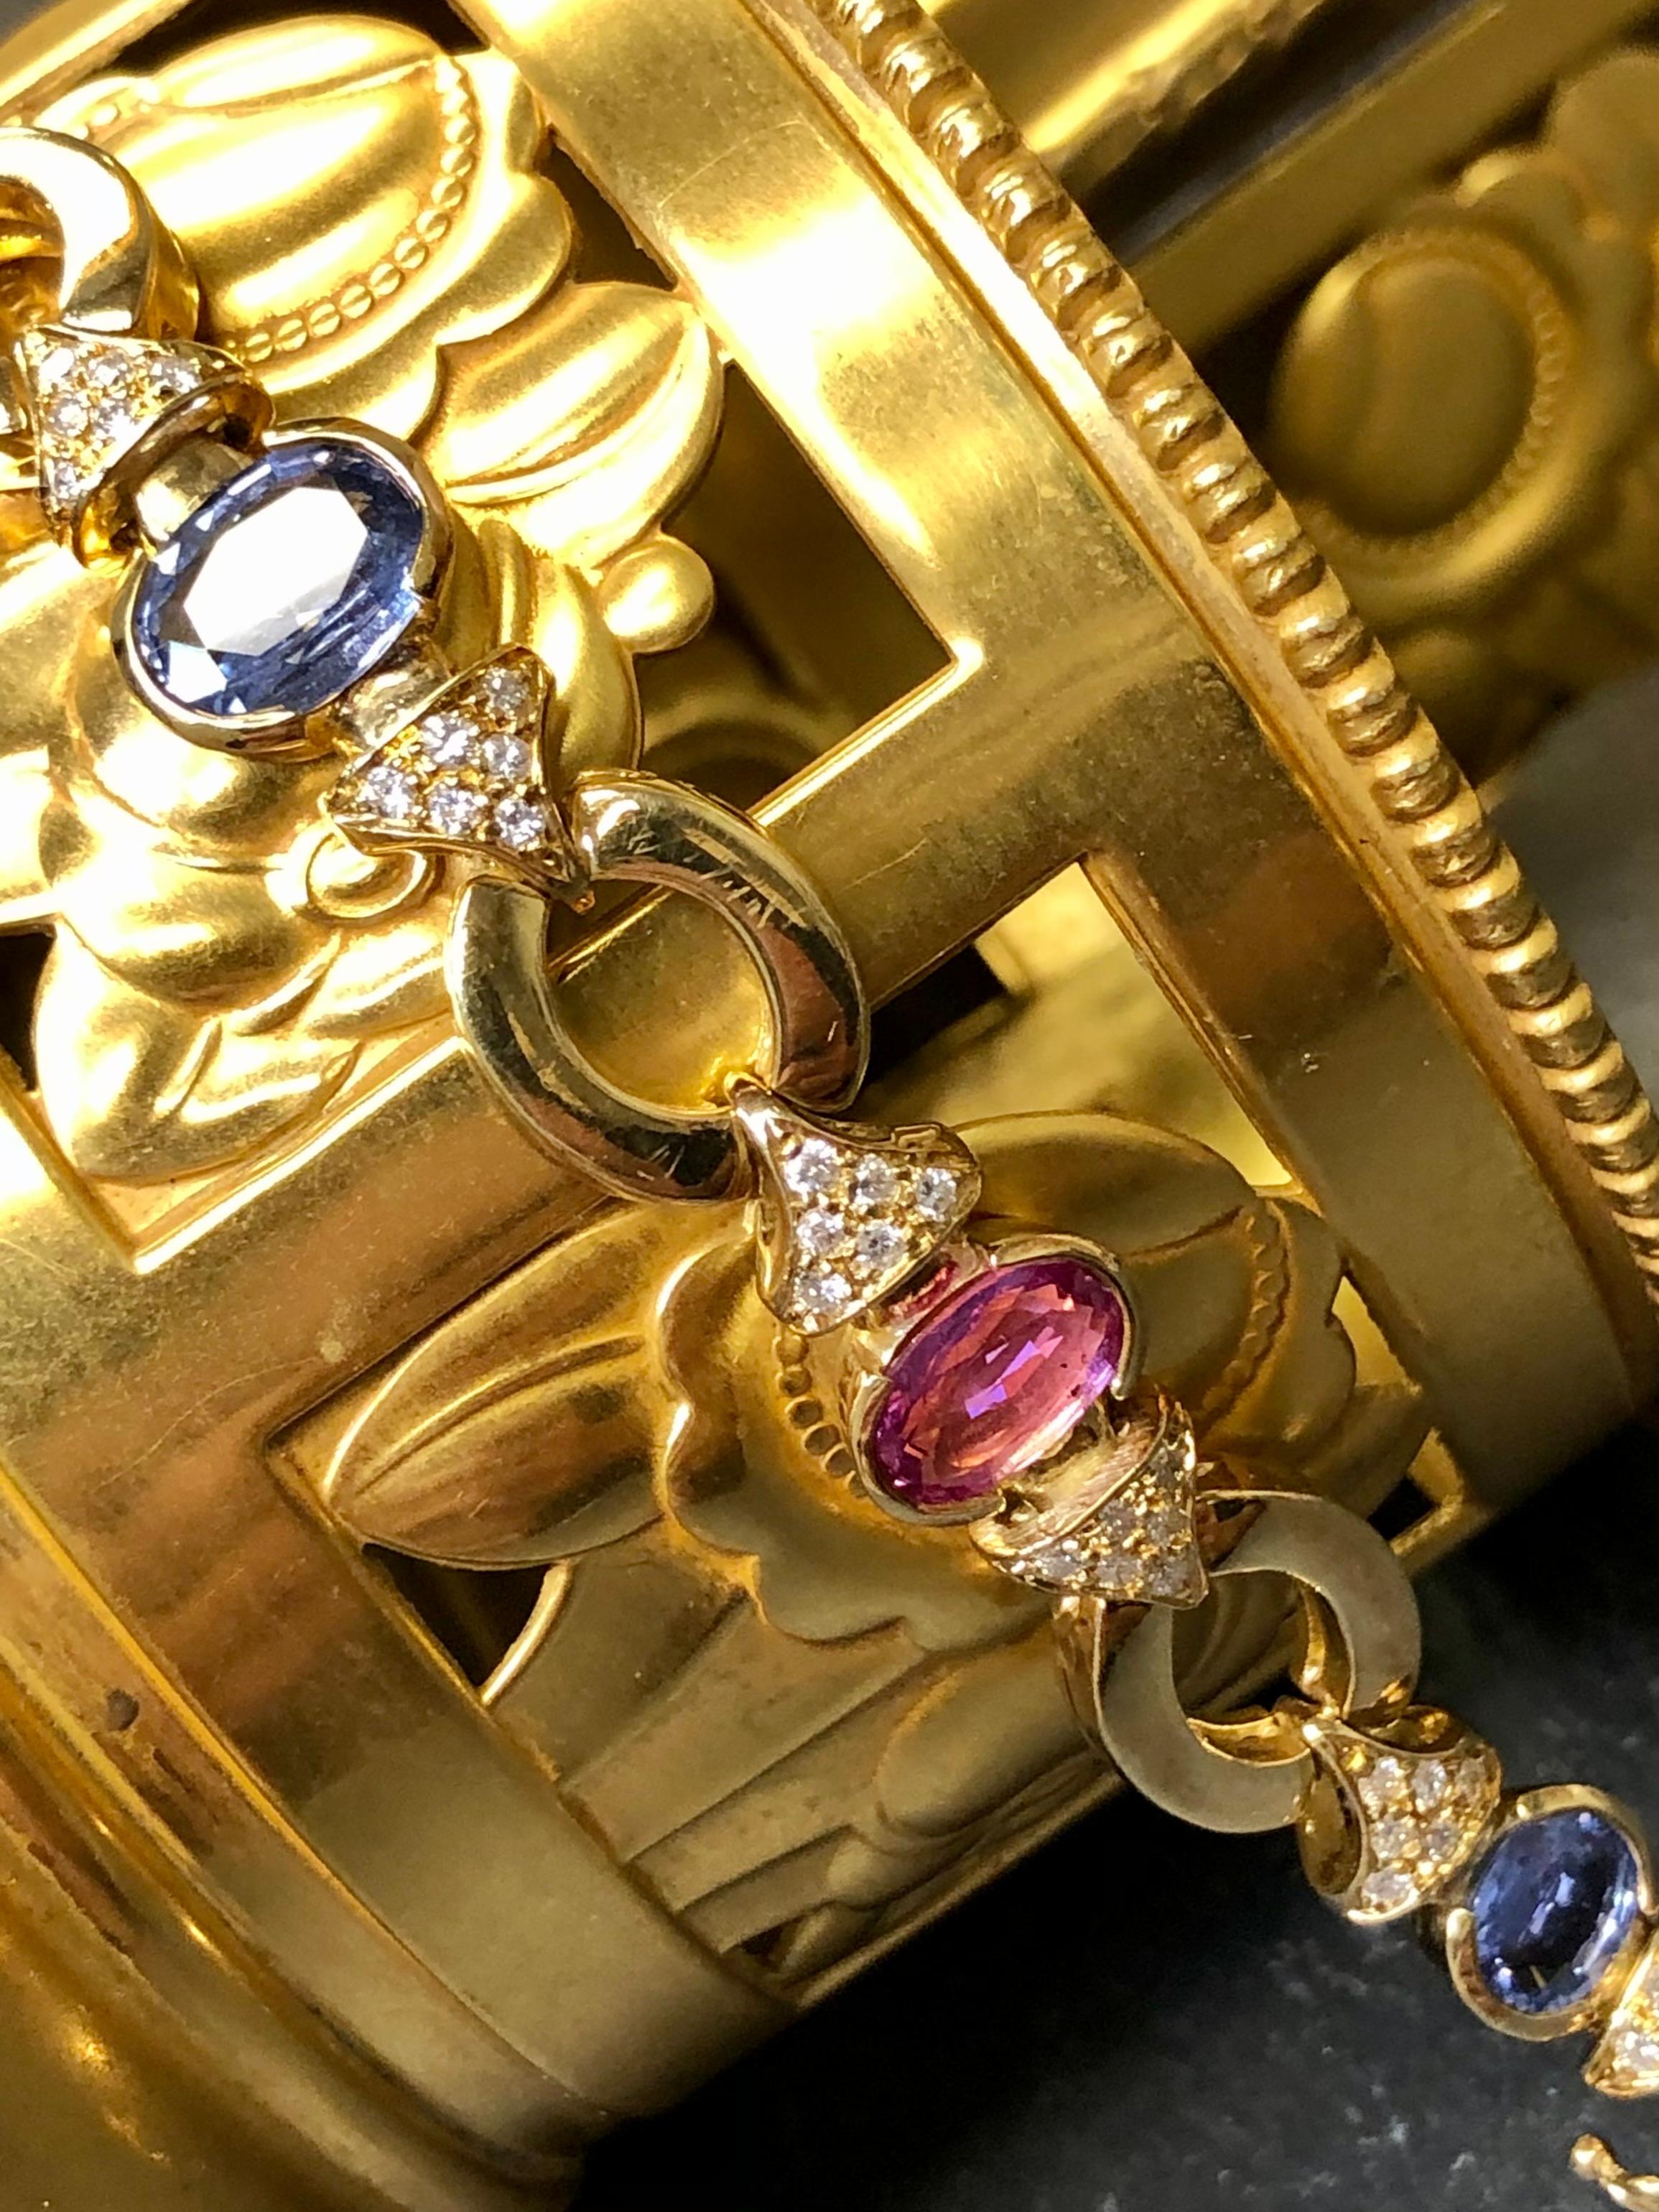 Un bracelet à la mode et de bonne facture en or jaune 18 carats, serti de saphirs bleus et roses alternés ainsi que de diamants. En ce qui concerne les saphirs roses, vous avez 3 pierres pesant 1ct, 1,11ct et 1,62ct. En ce qui concerne les saphirs